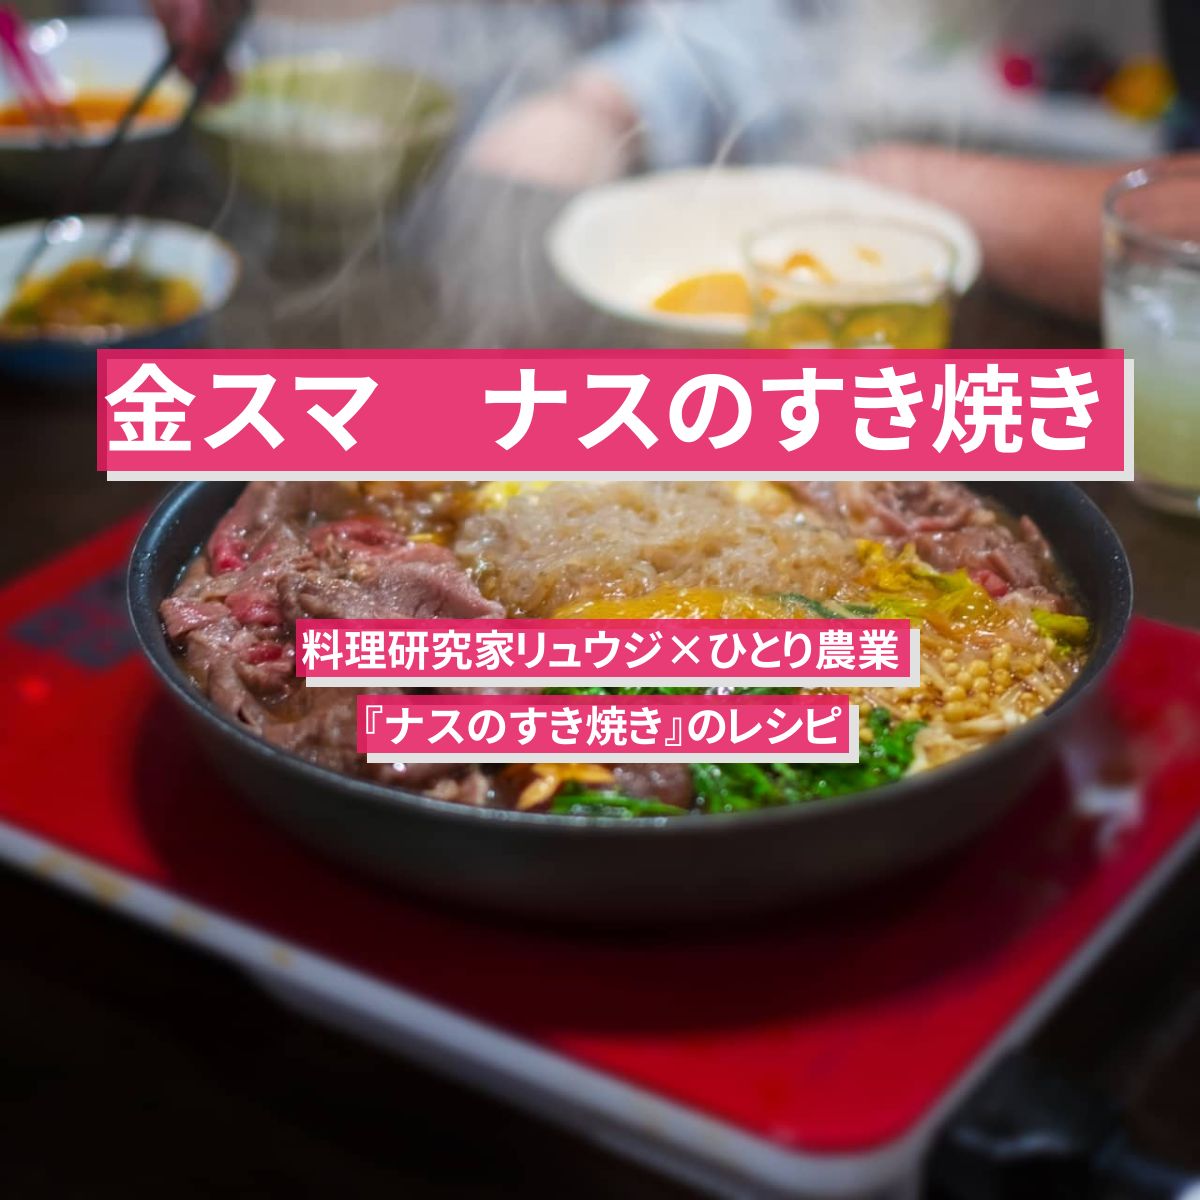 【金スマ】『ナスのすき焼き』リュウジのレシピ